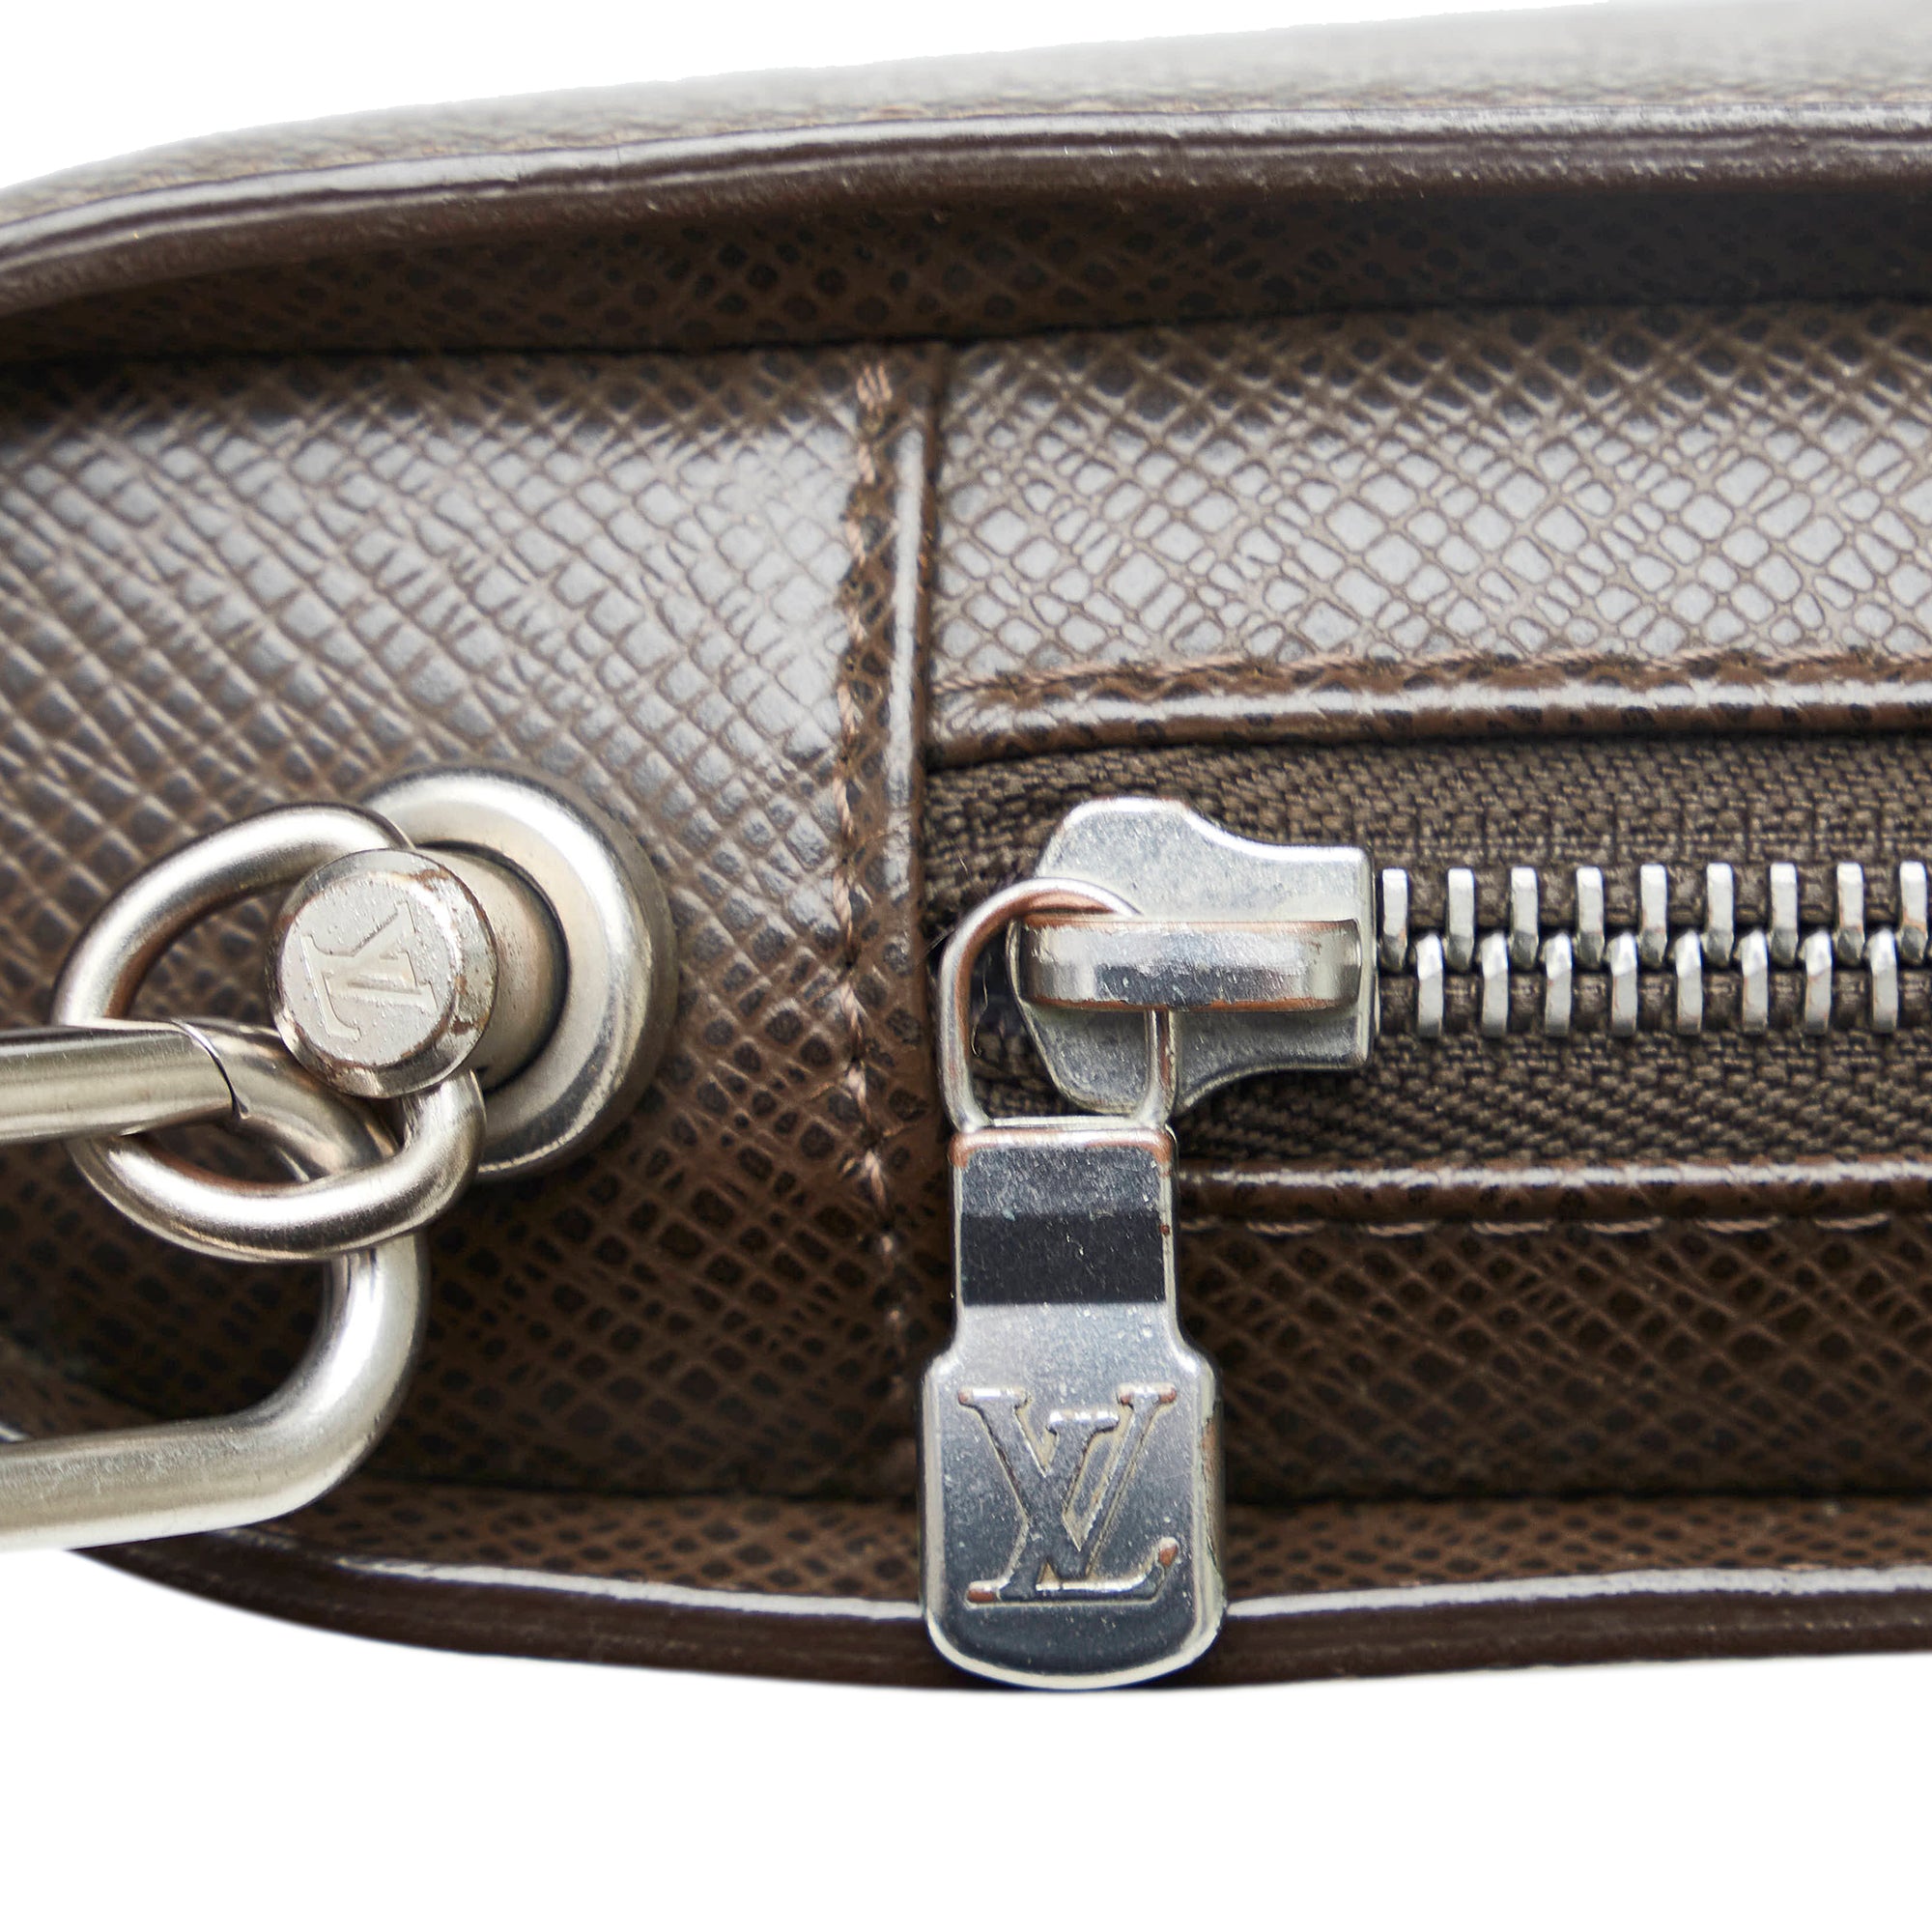 Louis Vuitton Taiga Pochette Baïkal - Brown Clutches, Handbags